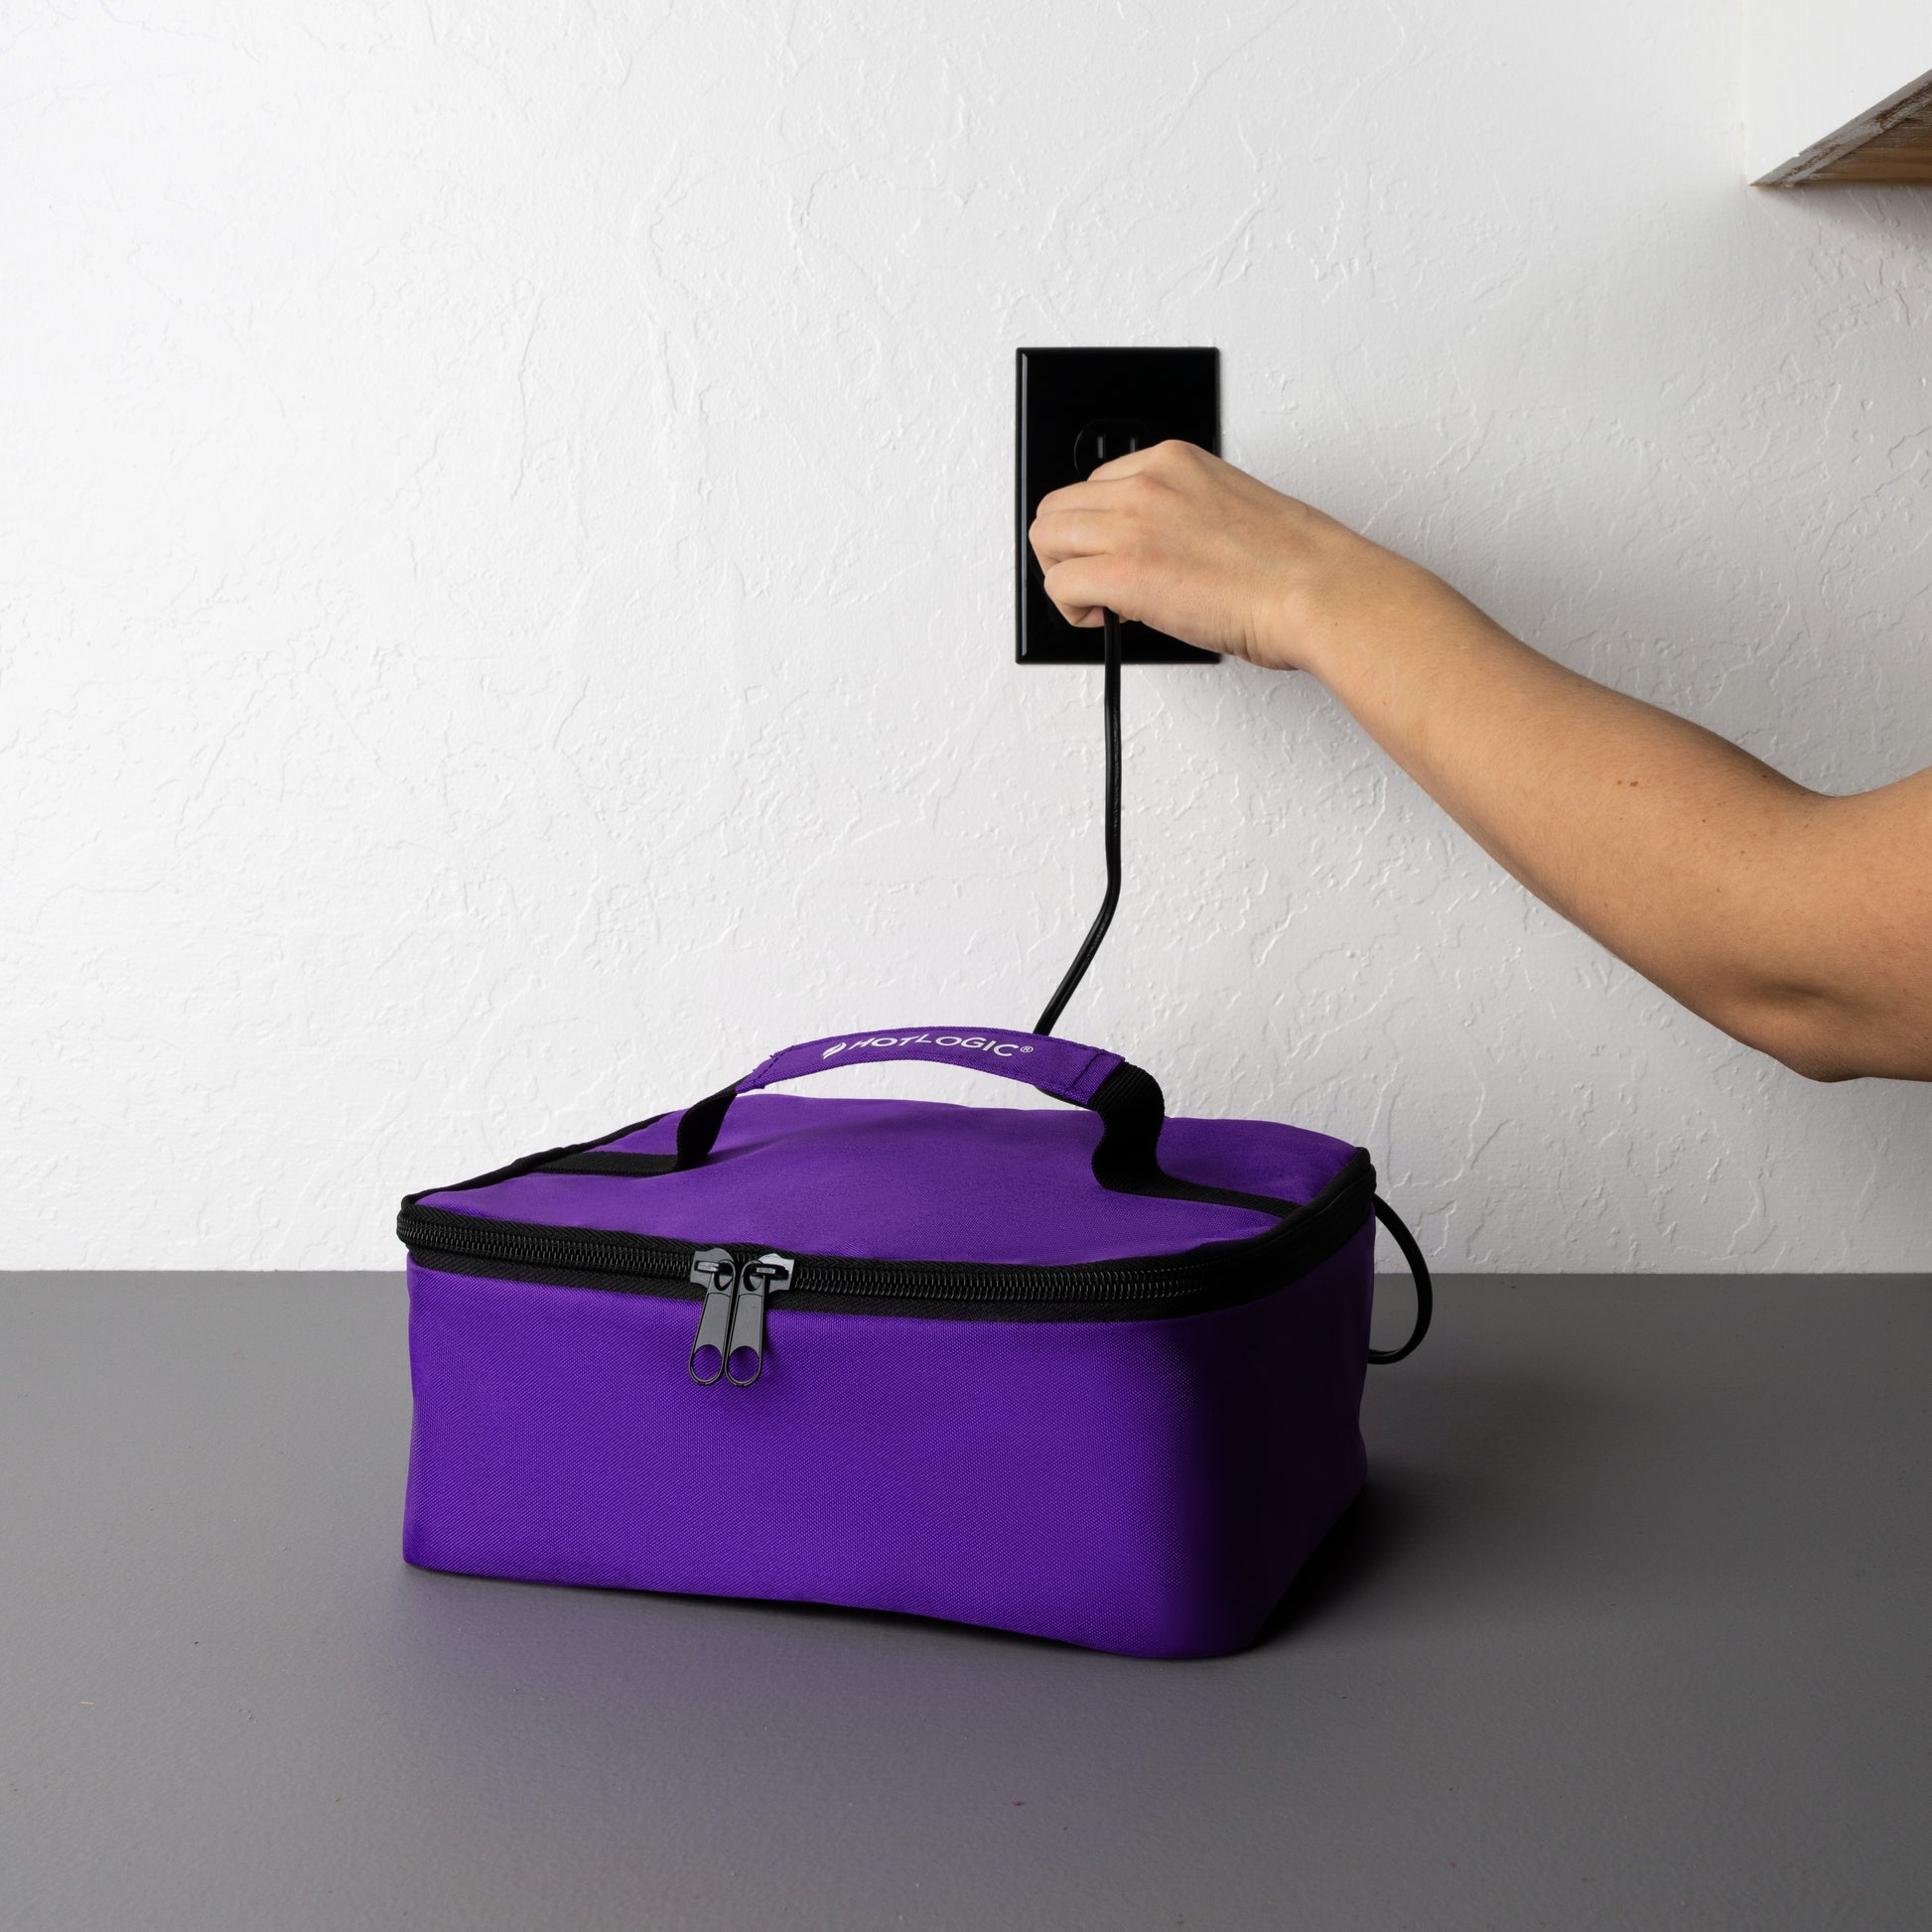 HOTLOGIC Portable Personal Mini Oven - Aqua Floral